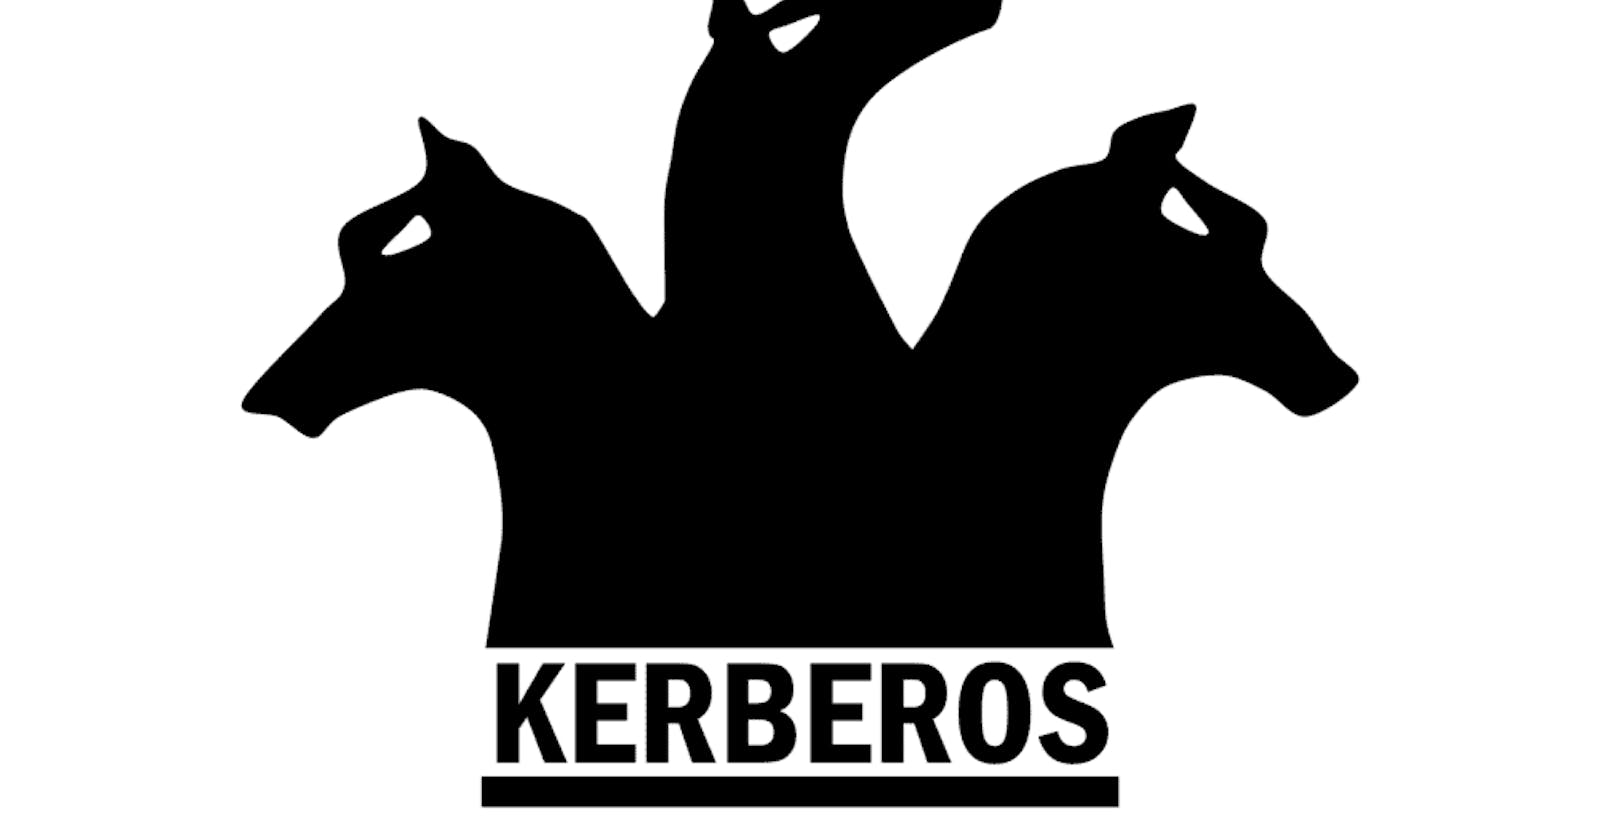 Introduction to Kerberos